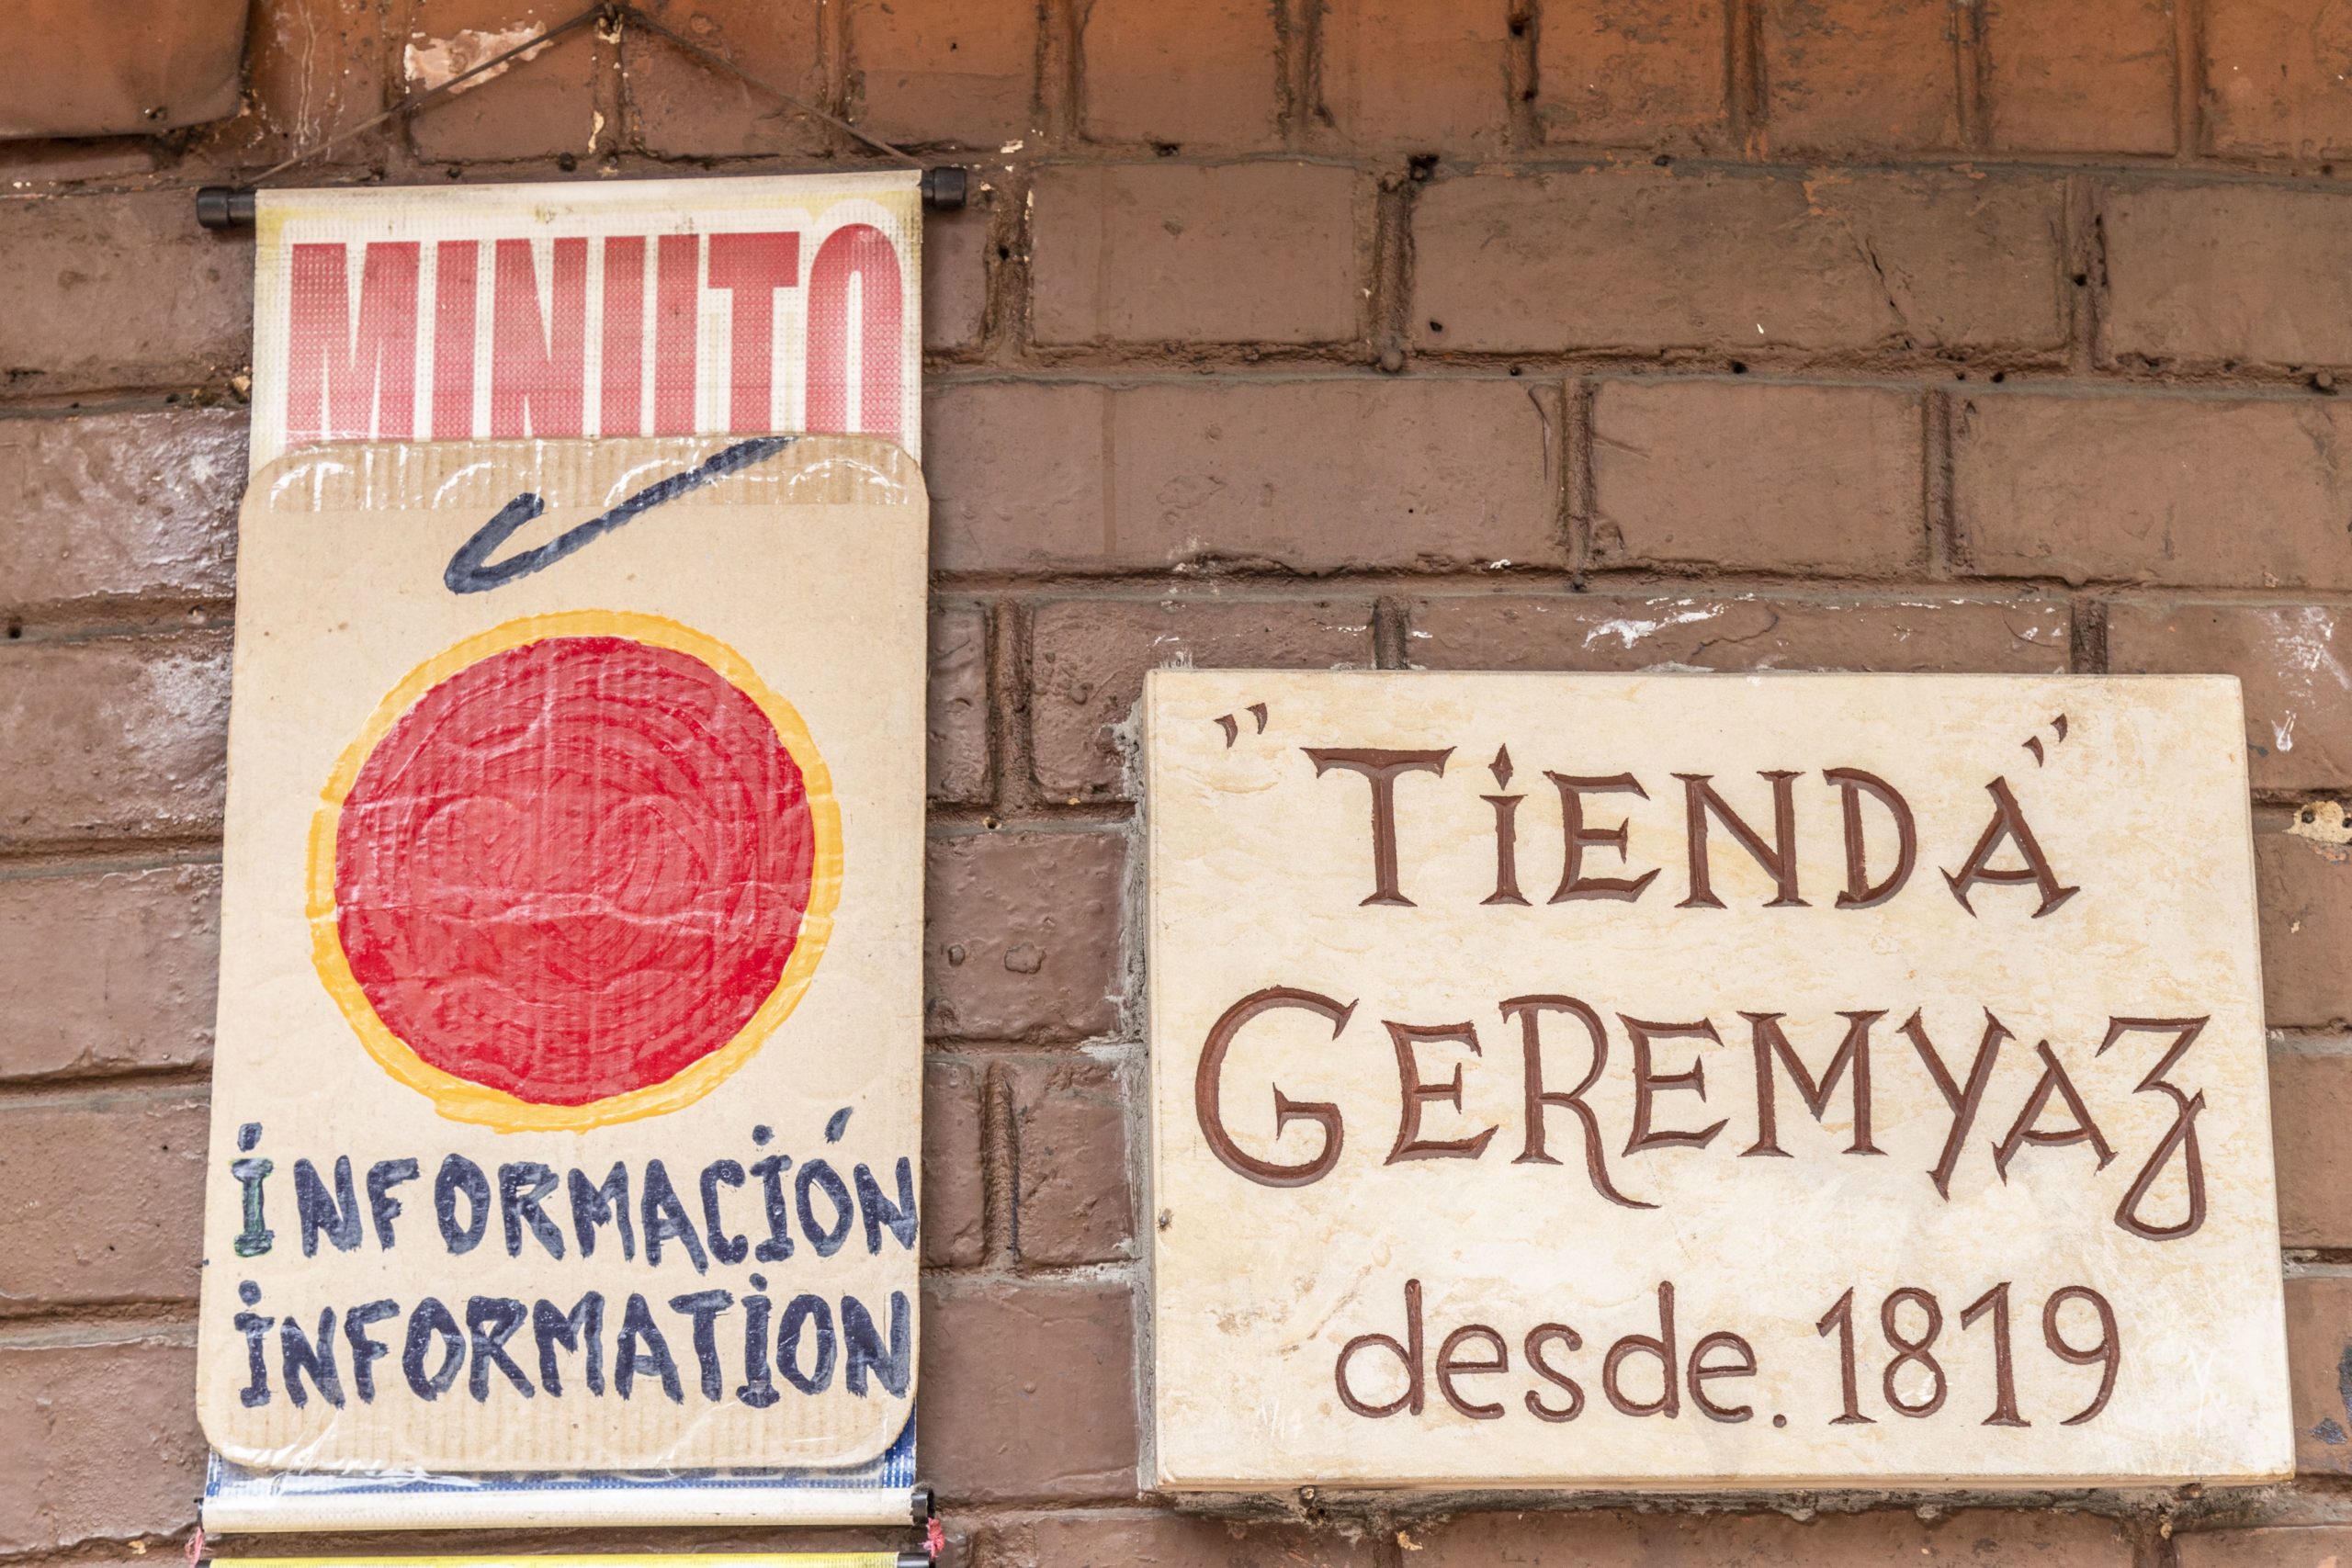 Dos avisos informativos en la fachada de la tienda Geremyaz